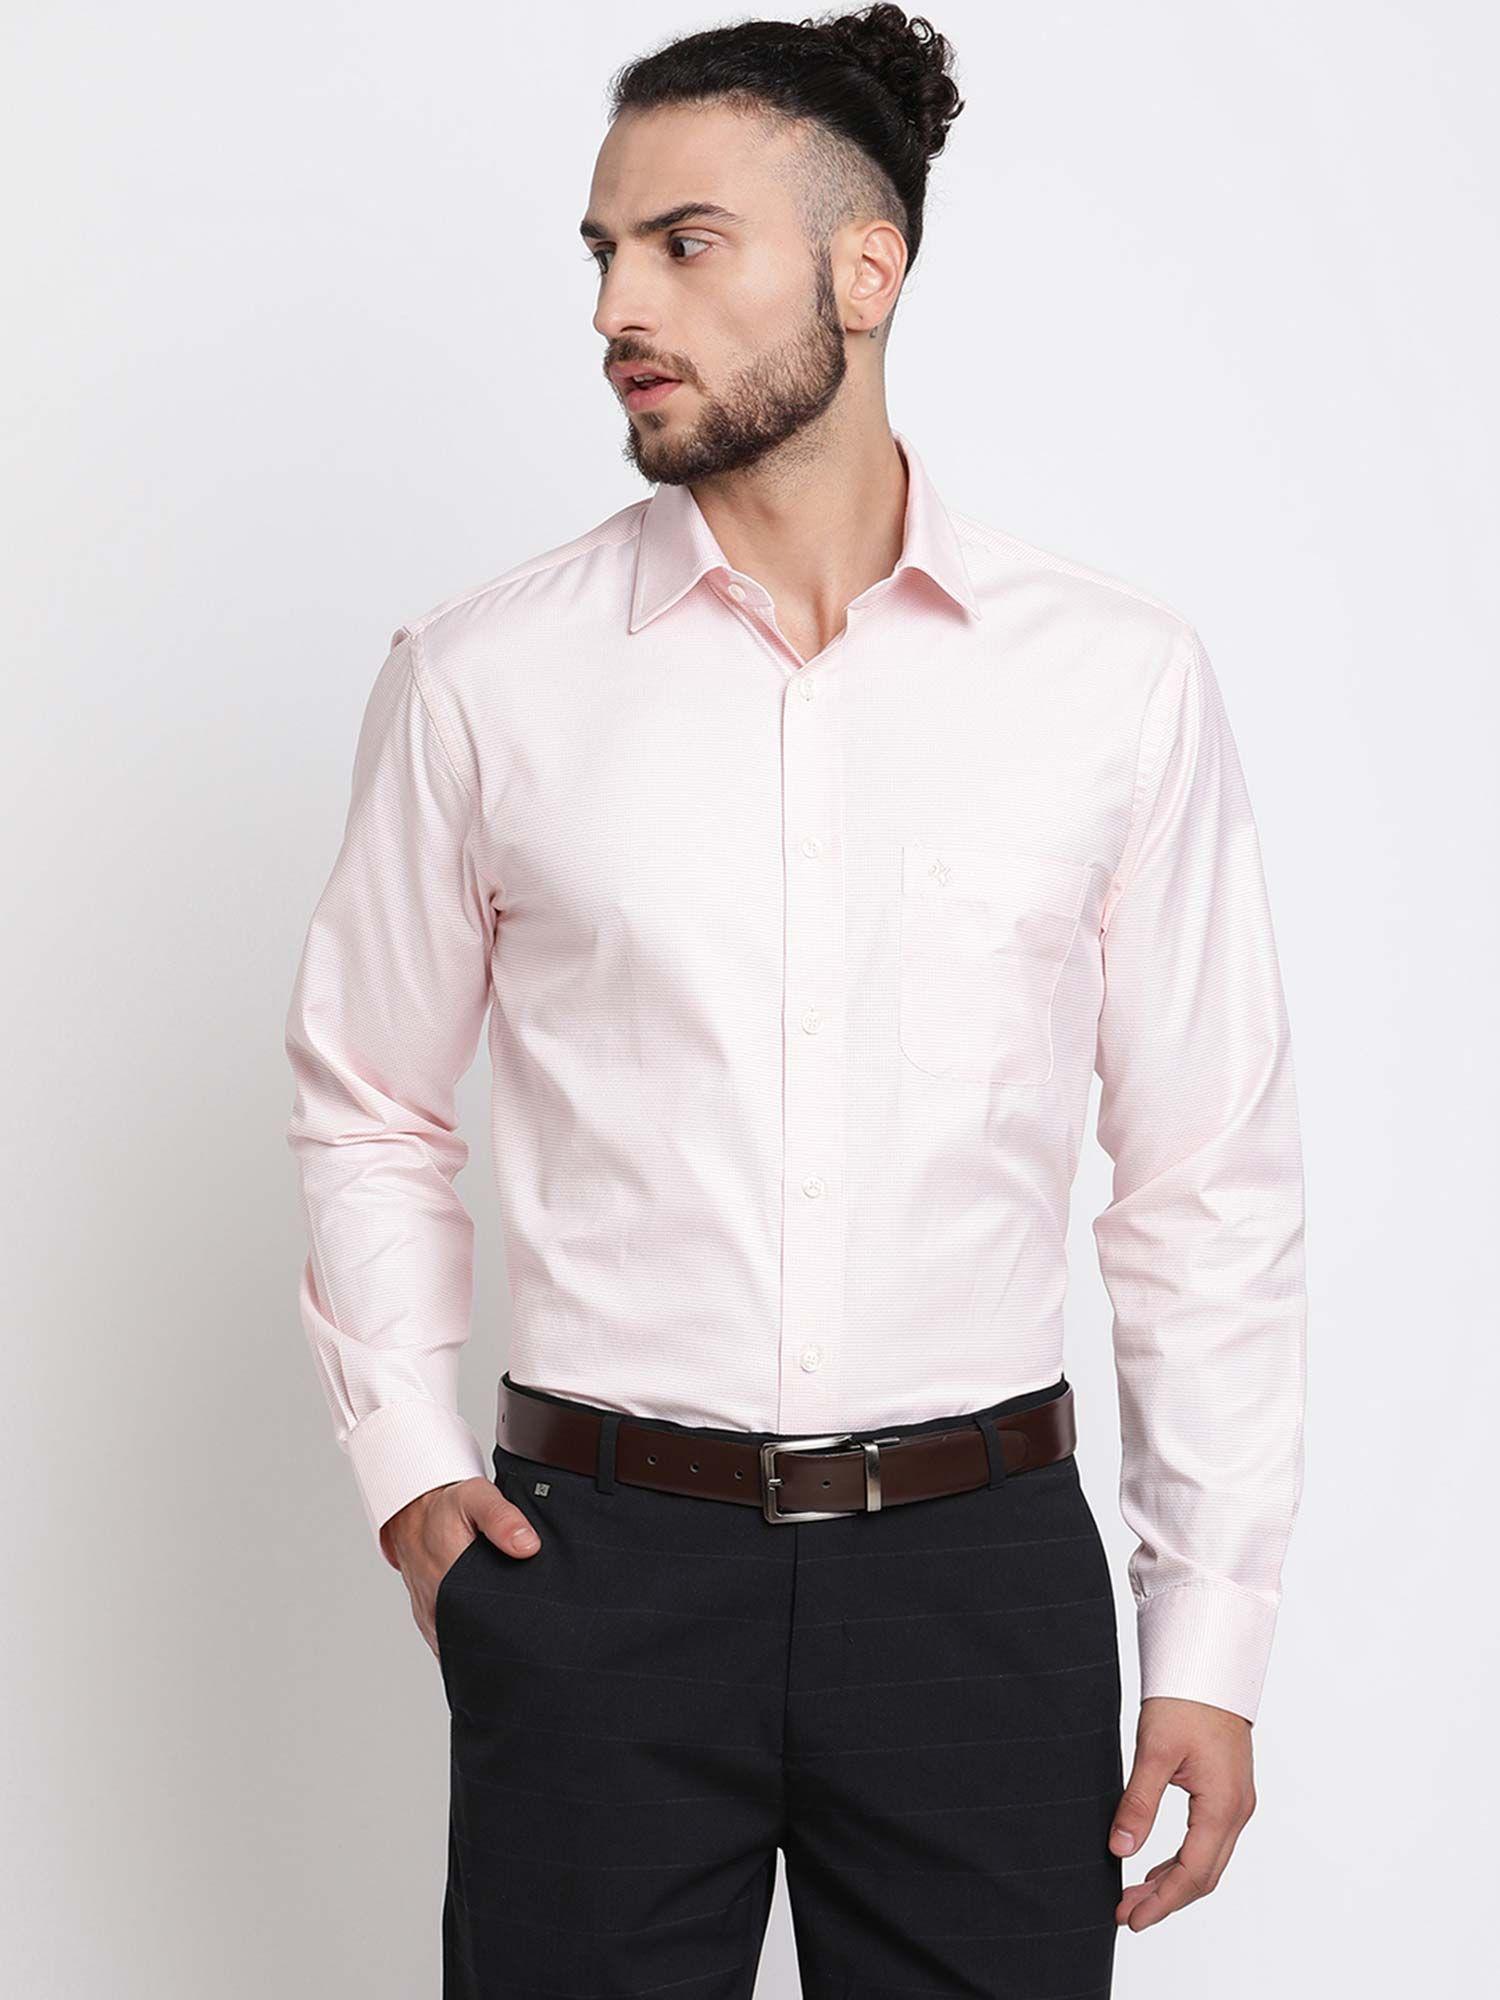 men's-pink-formal-shirt